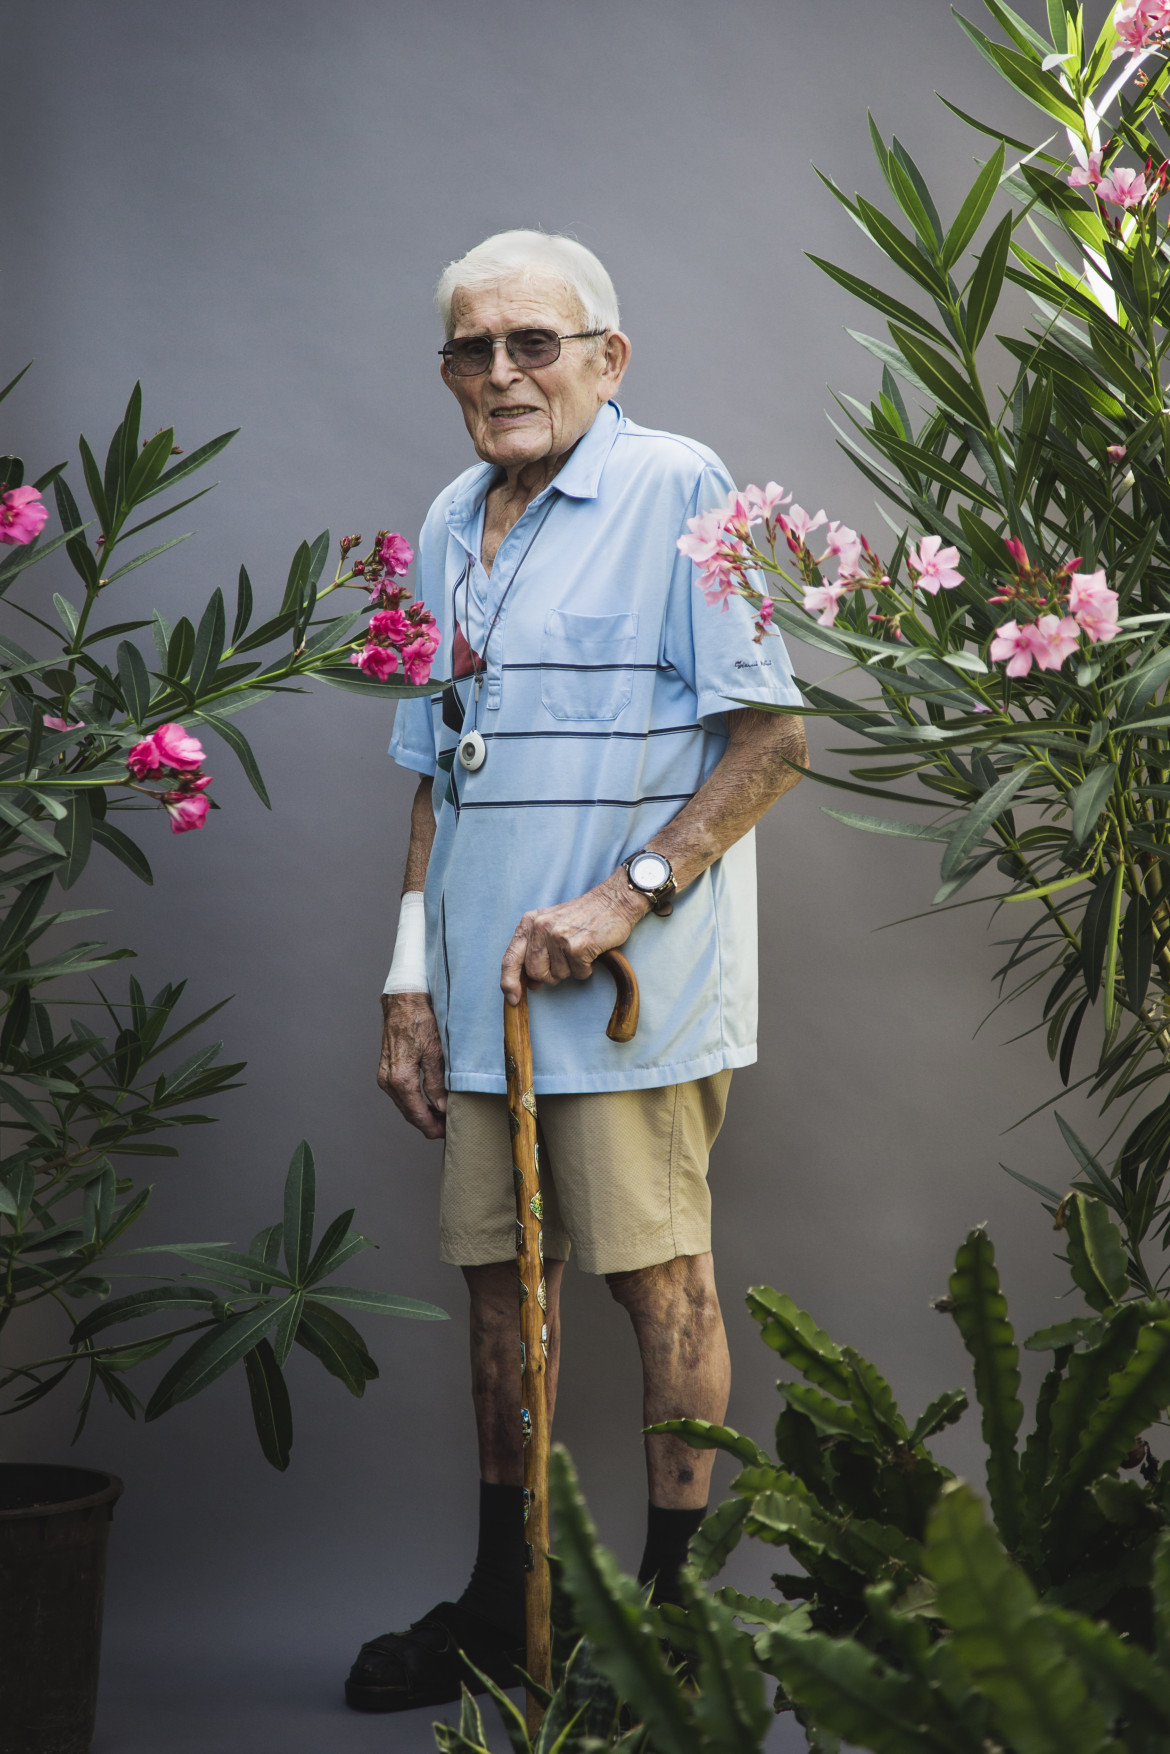 fot. Magdalena Stengel, z cyklu "±100", wyróżnienie w konkursie Zeiss Photography Awards 2020<br></br><br></br>Fotografka eksploruje temat wydłużania się średniej długości życia człowieka w serii humorystycznych portretów ludzi w wieku 90-100 lat.